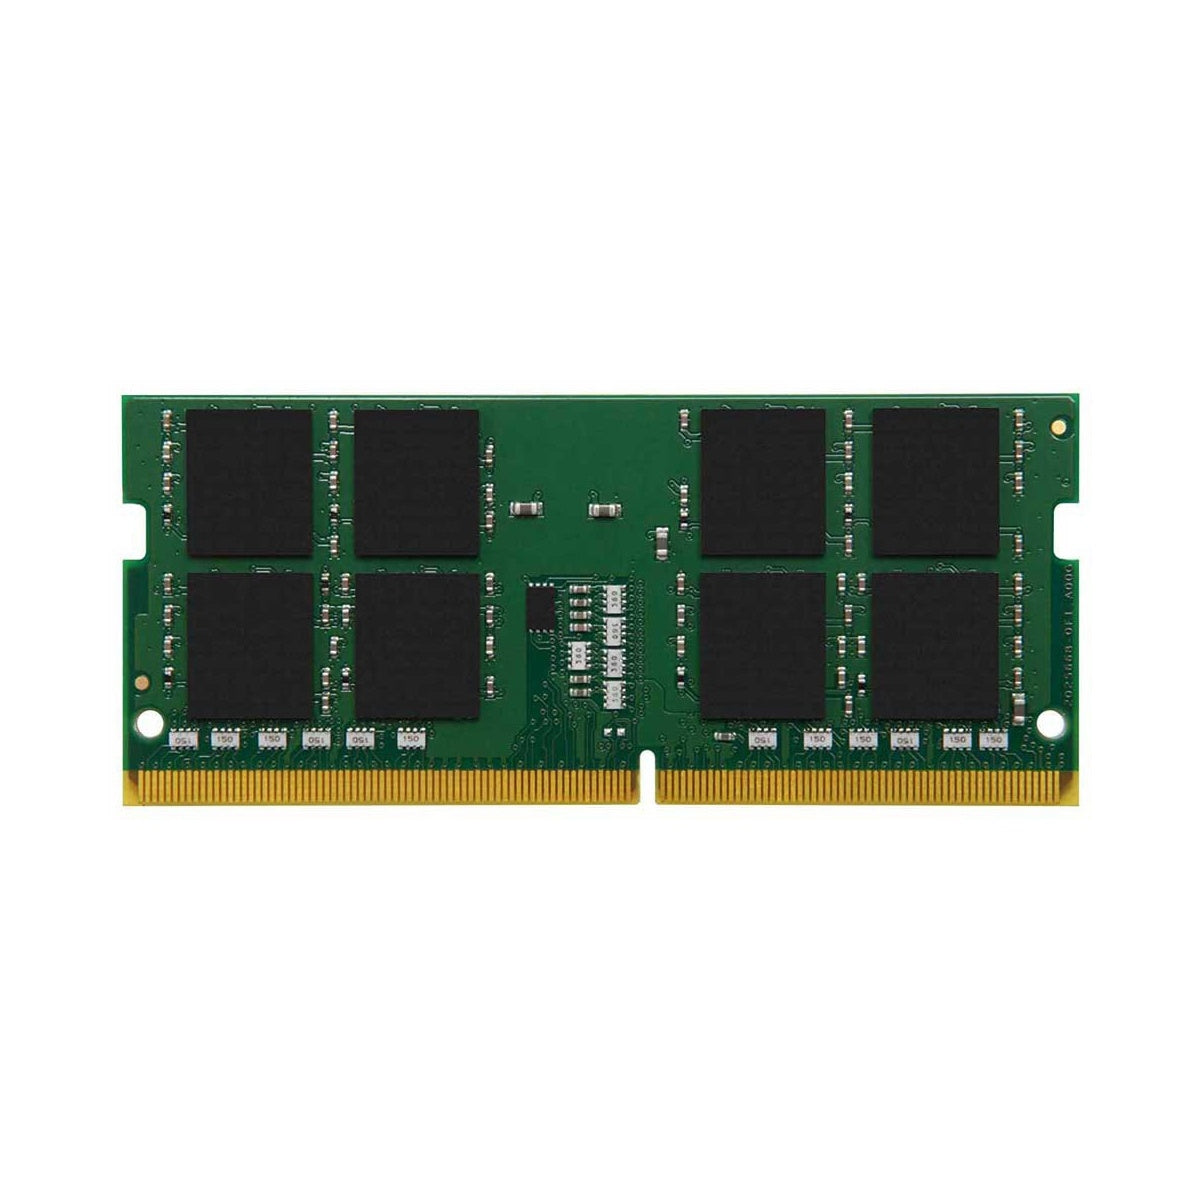 Memoria Kingston SODIMM 16gb 3200Mhz DDR4